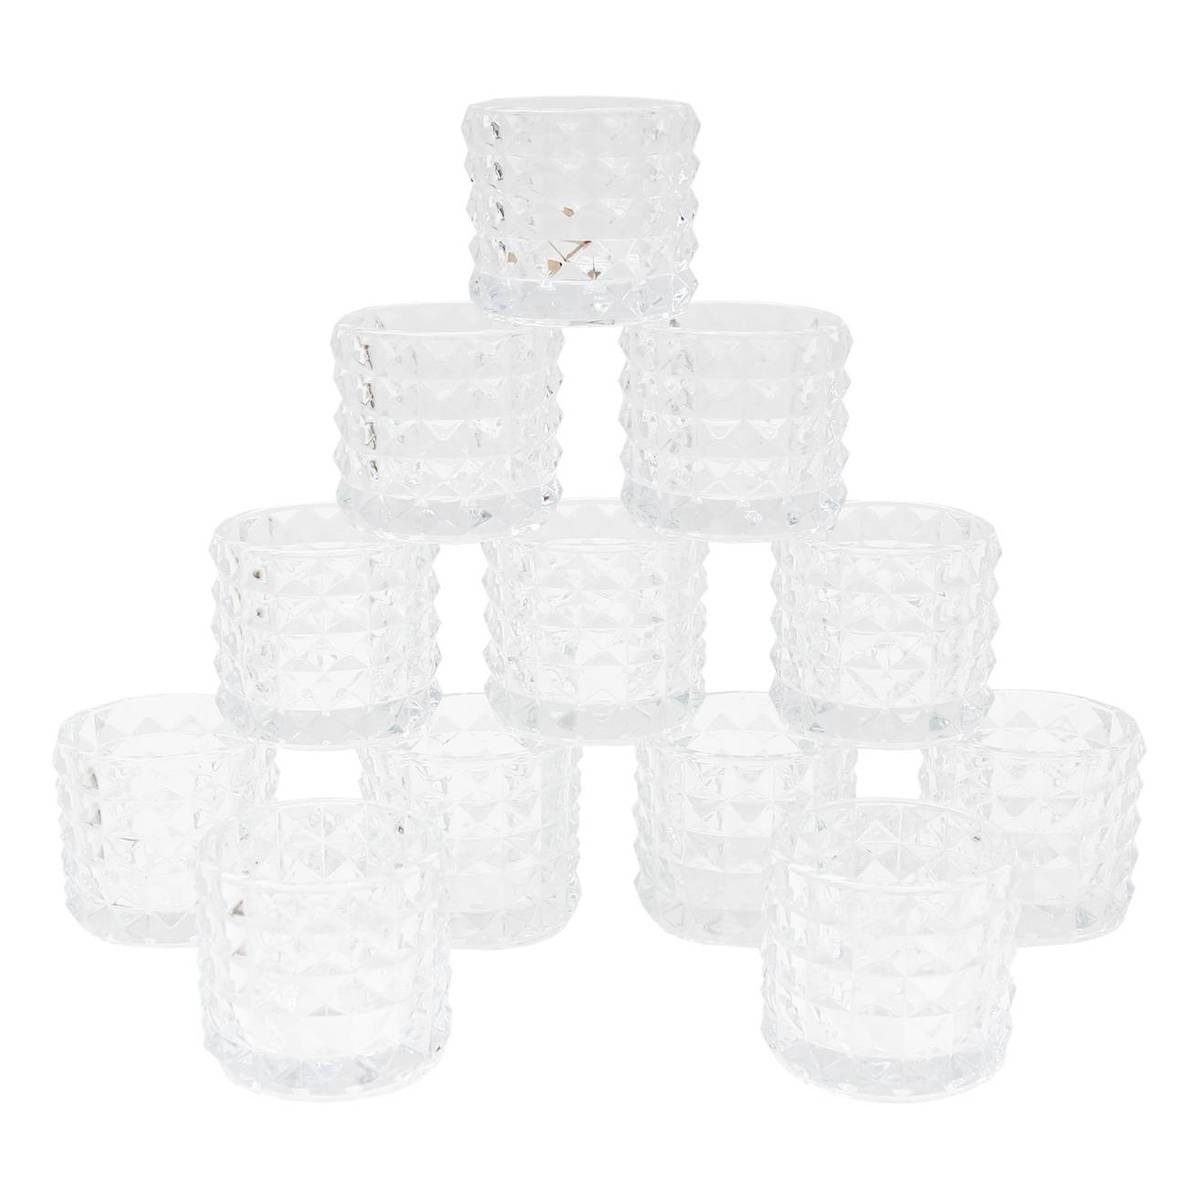 Buy Clear Textured Tea Light Holders 12 Pack for GBP 11.00 | Hobbycraft UK